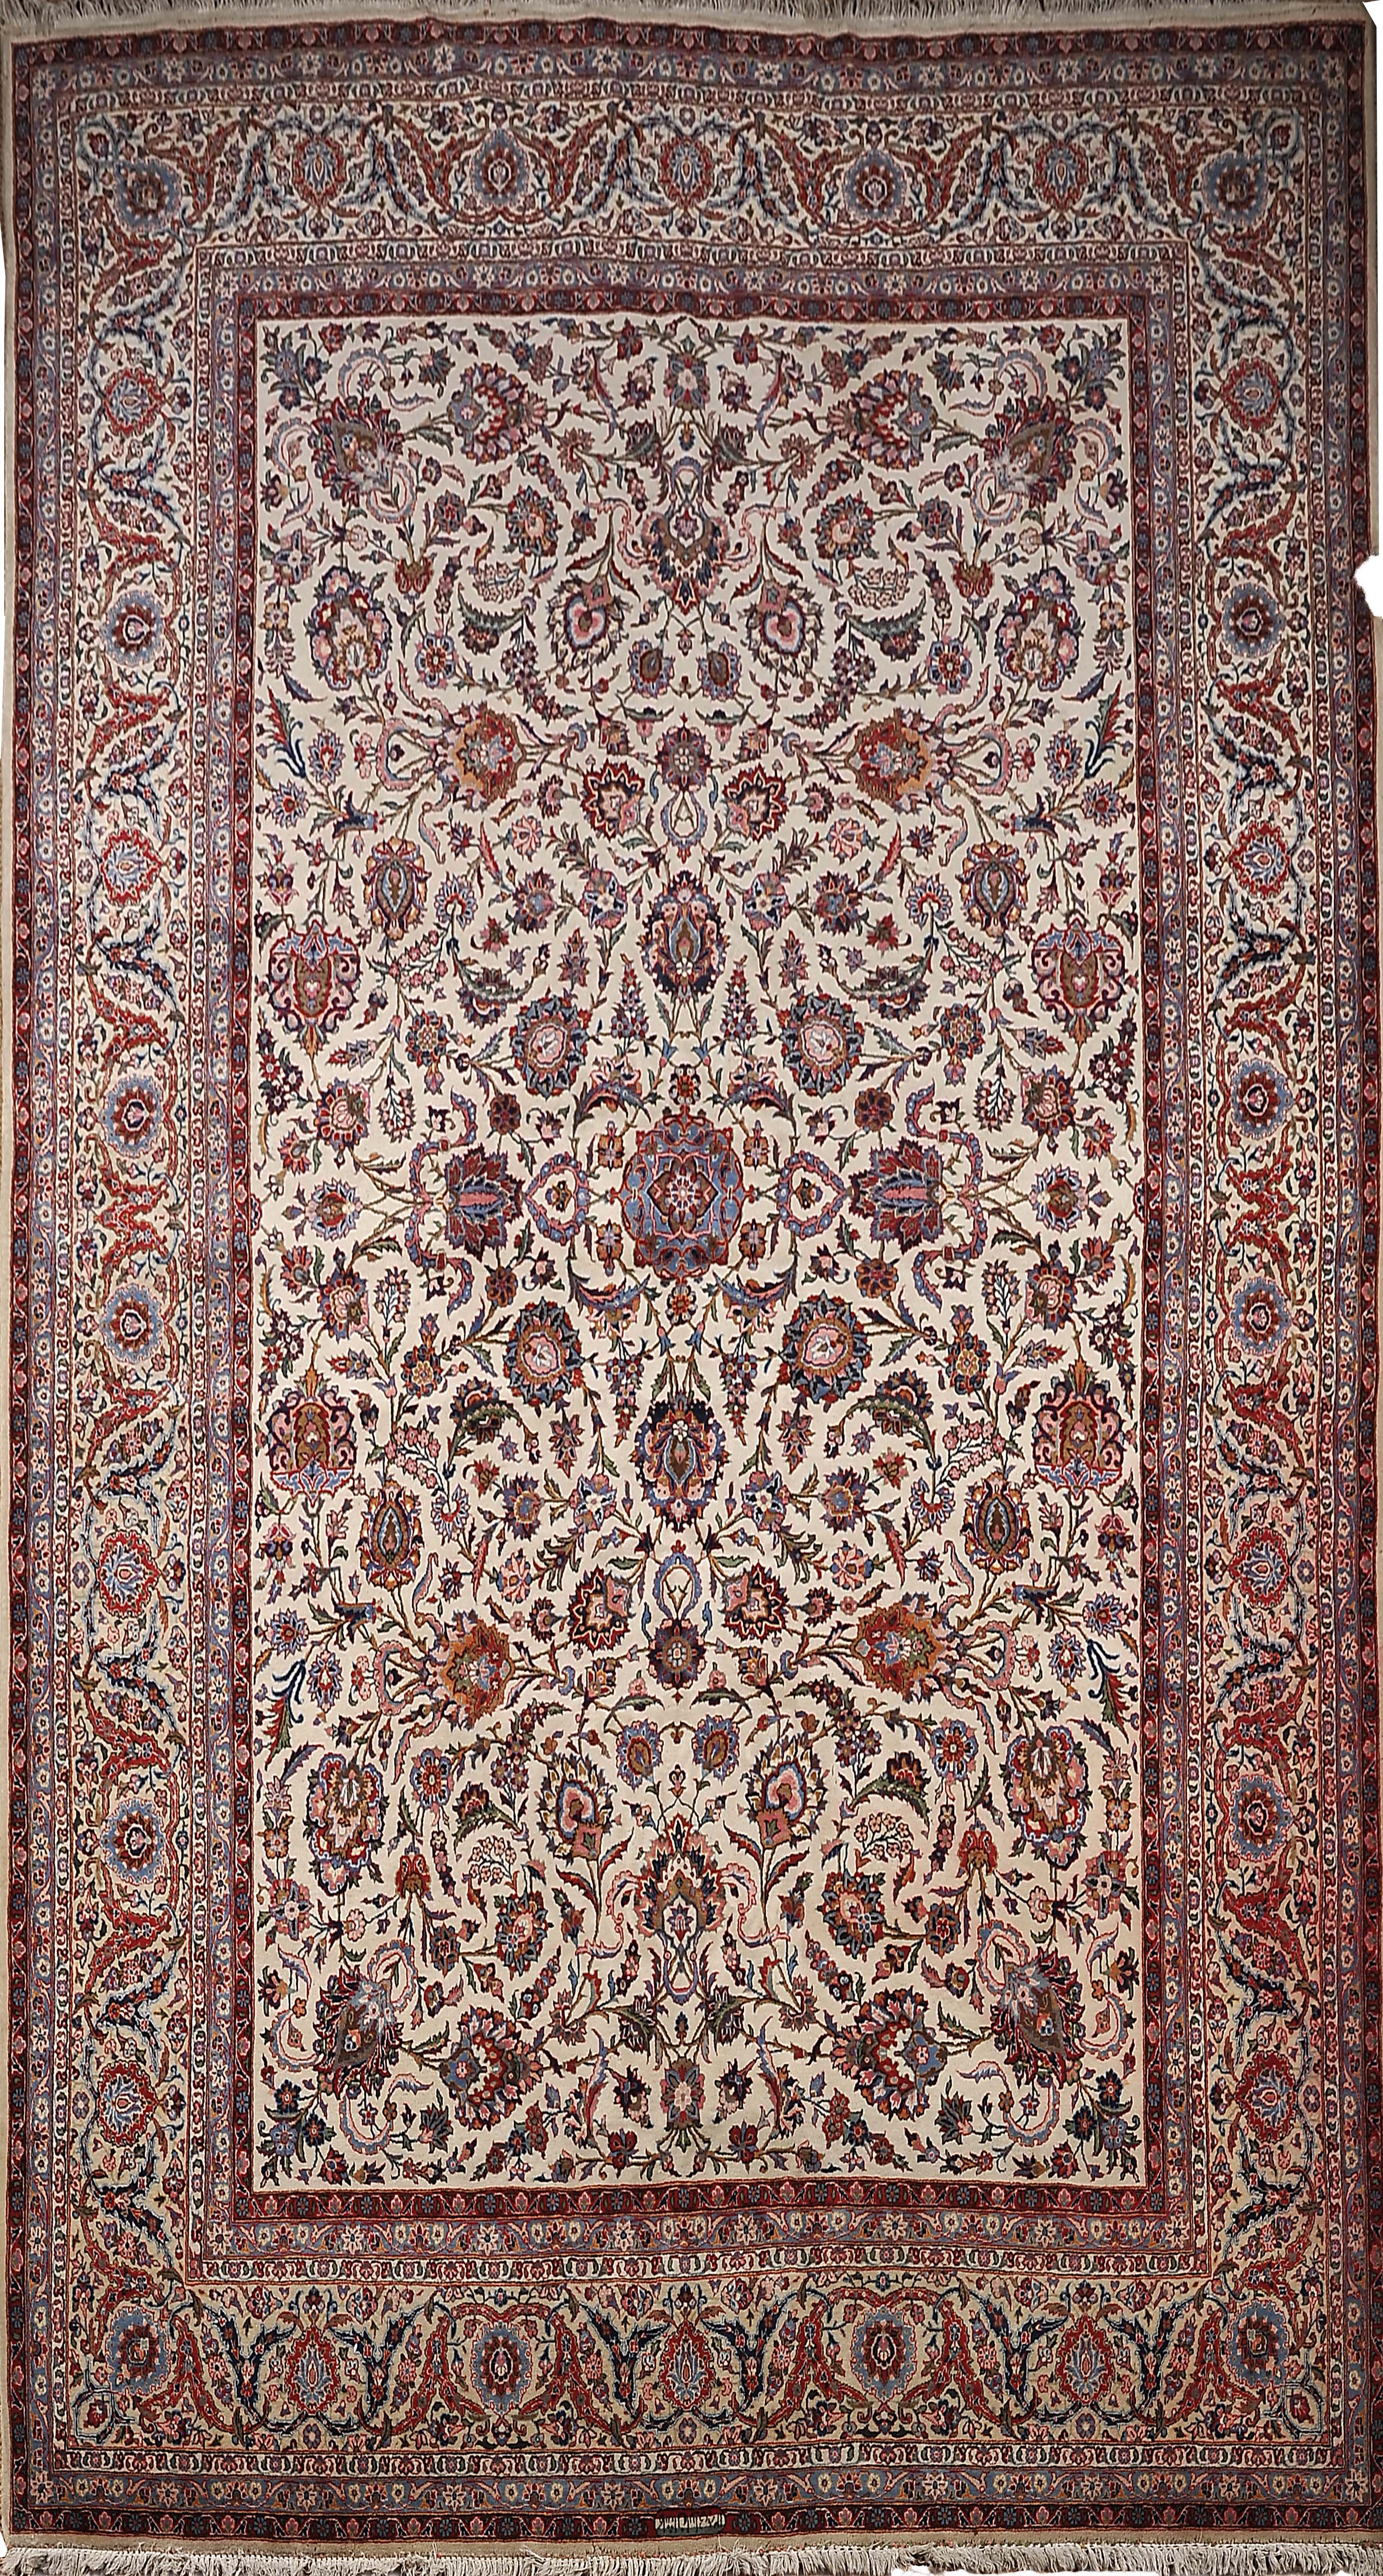 A Carpet